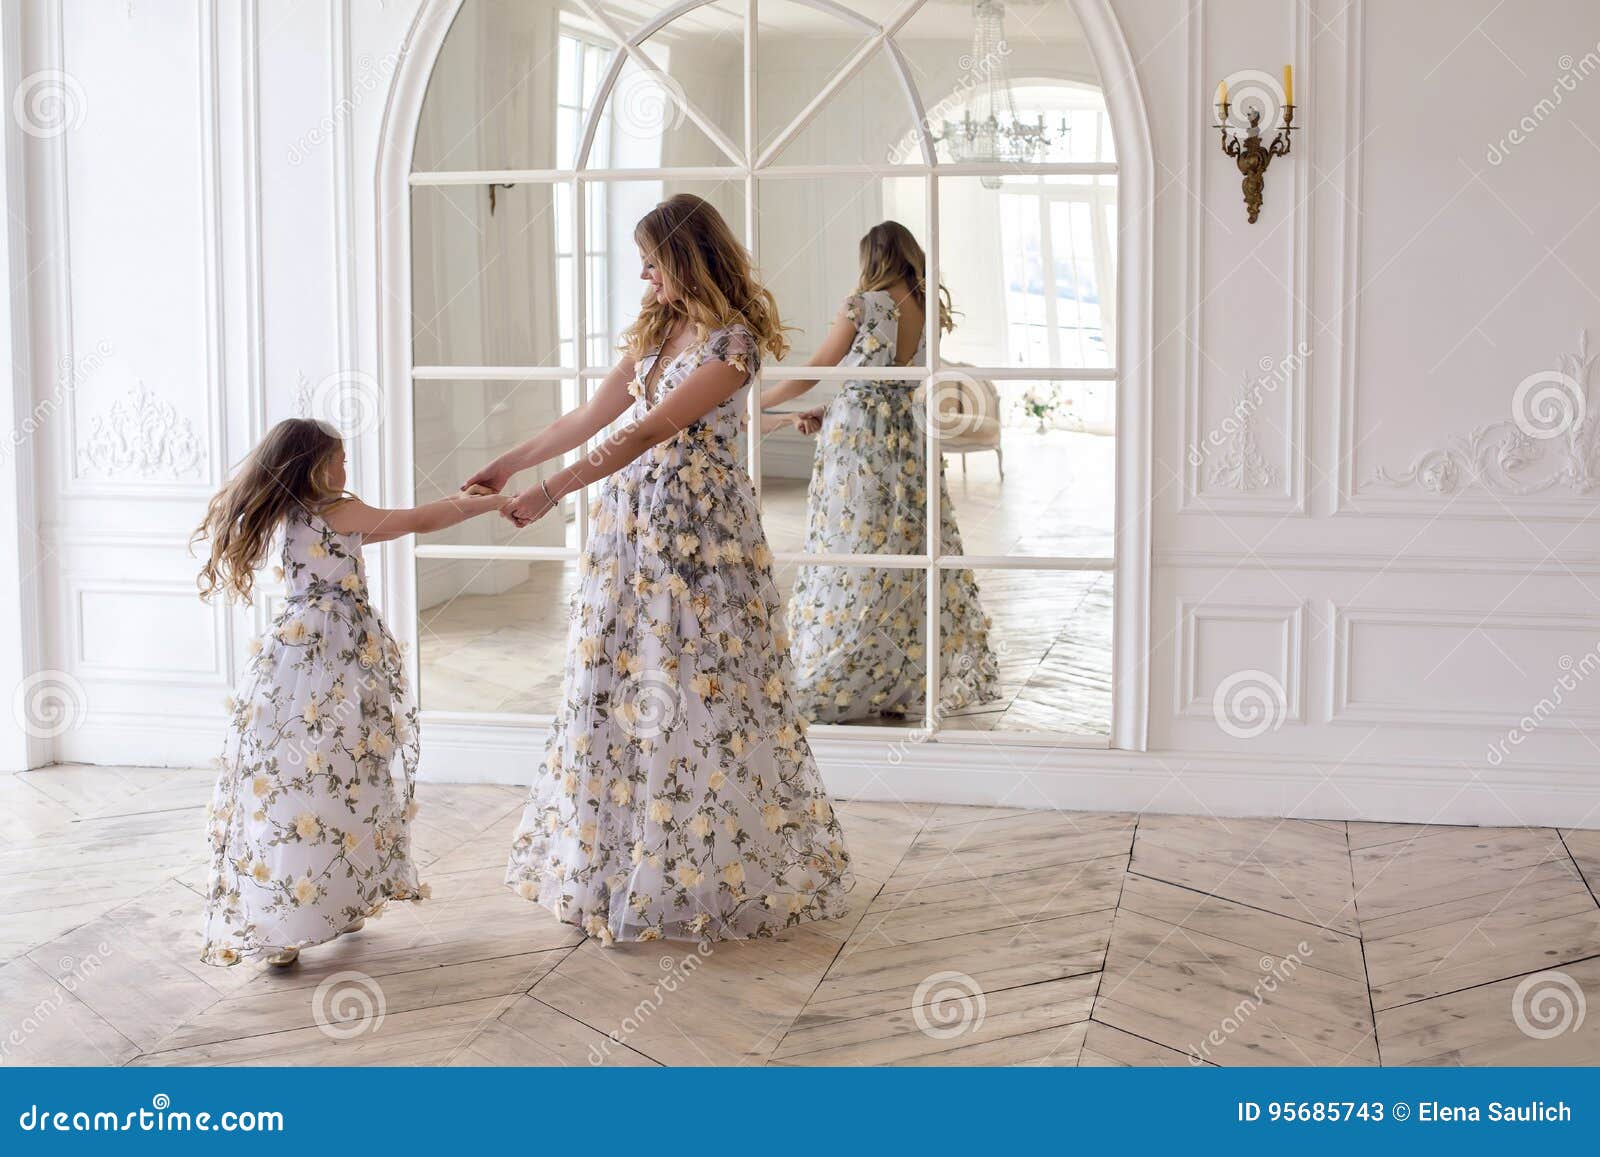 Танец мамы и дочери